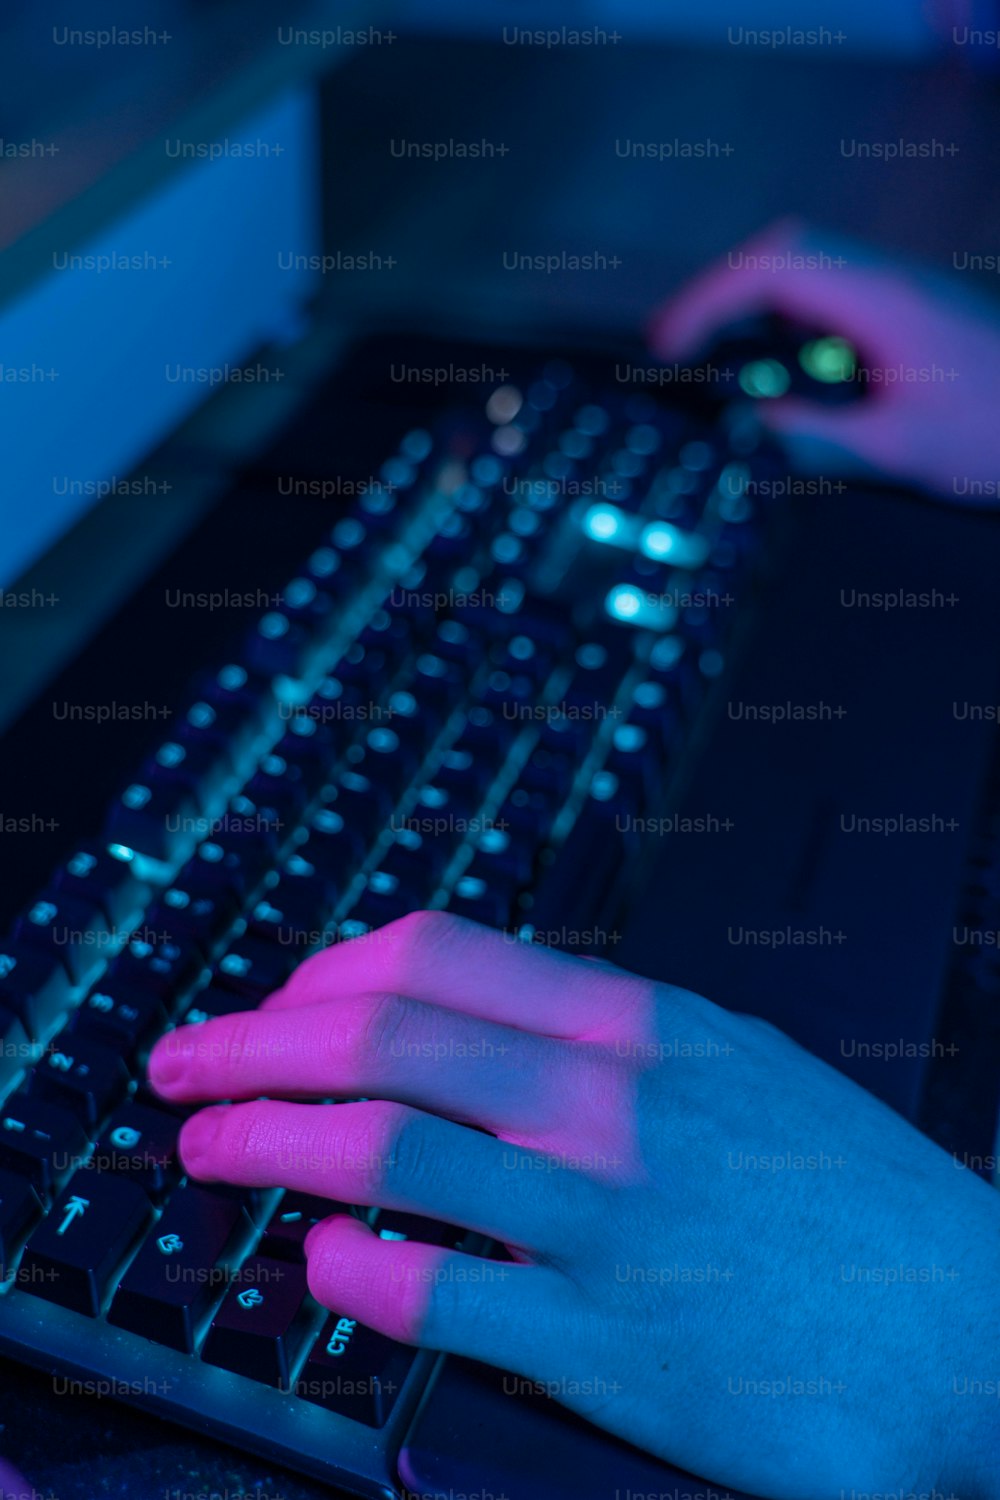 Una persona escribiendo en el teclado de una computadora por la noche